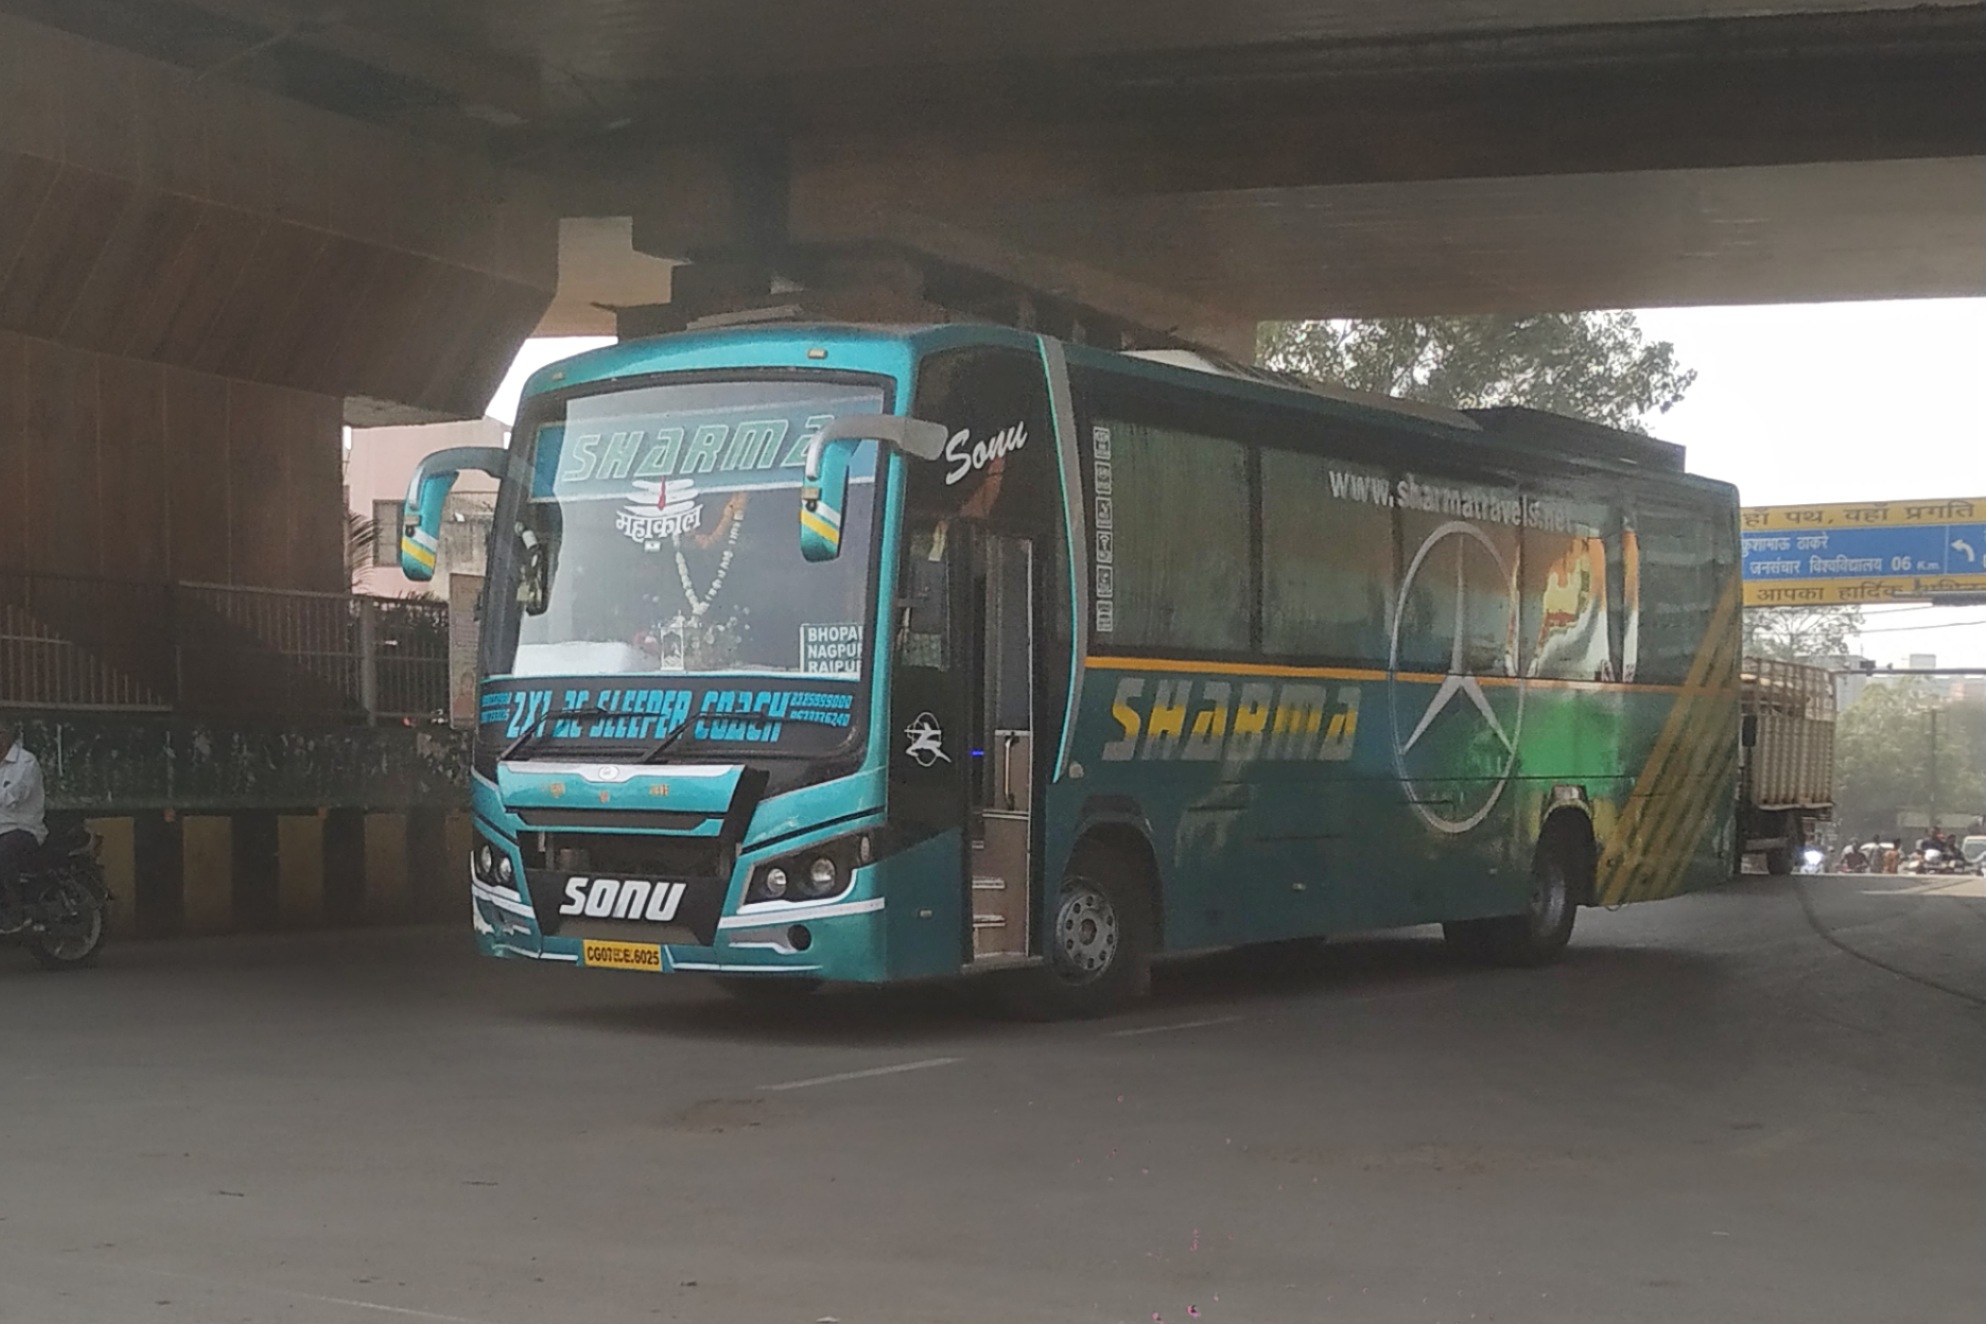 Sharma travels luxury bus